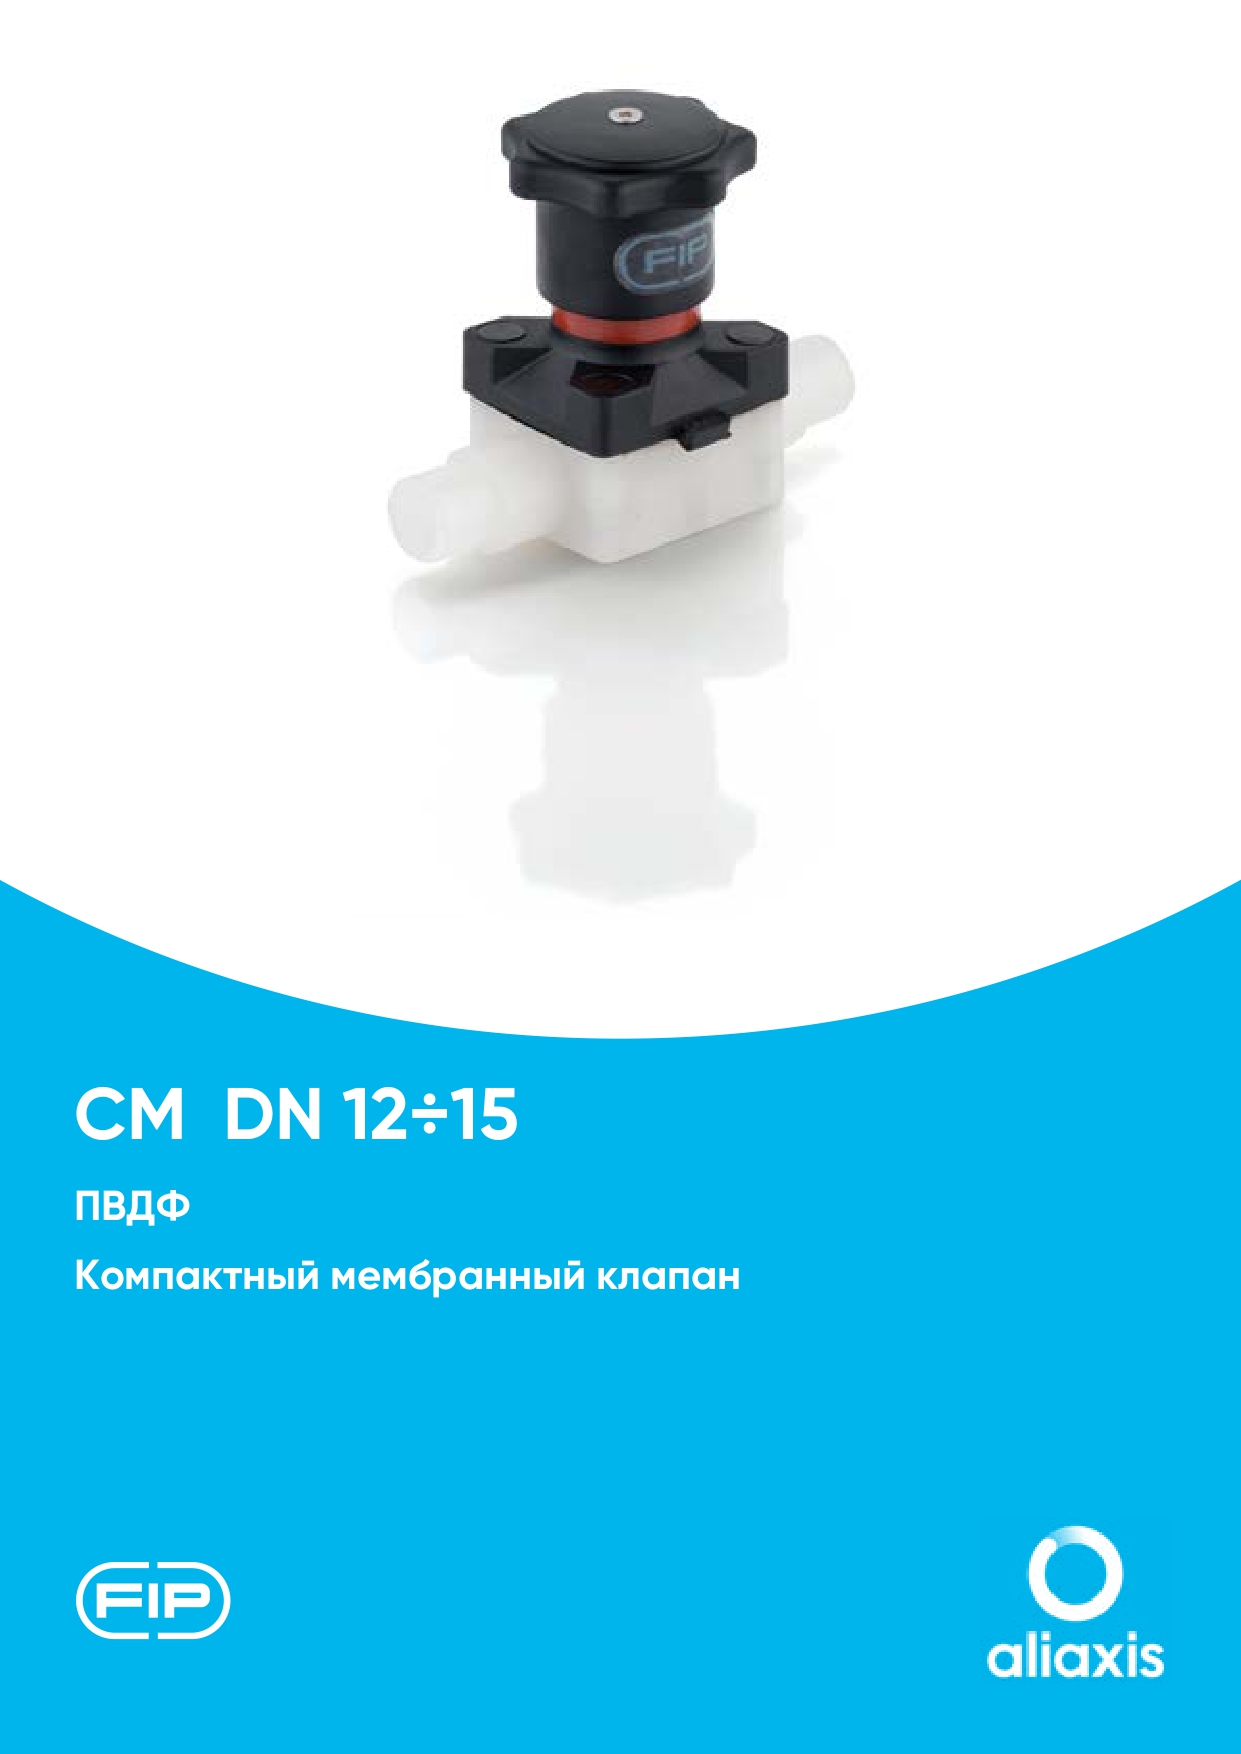 Компактные мембранные клапаны CM DN12-15 из ПВДФ